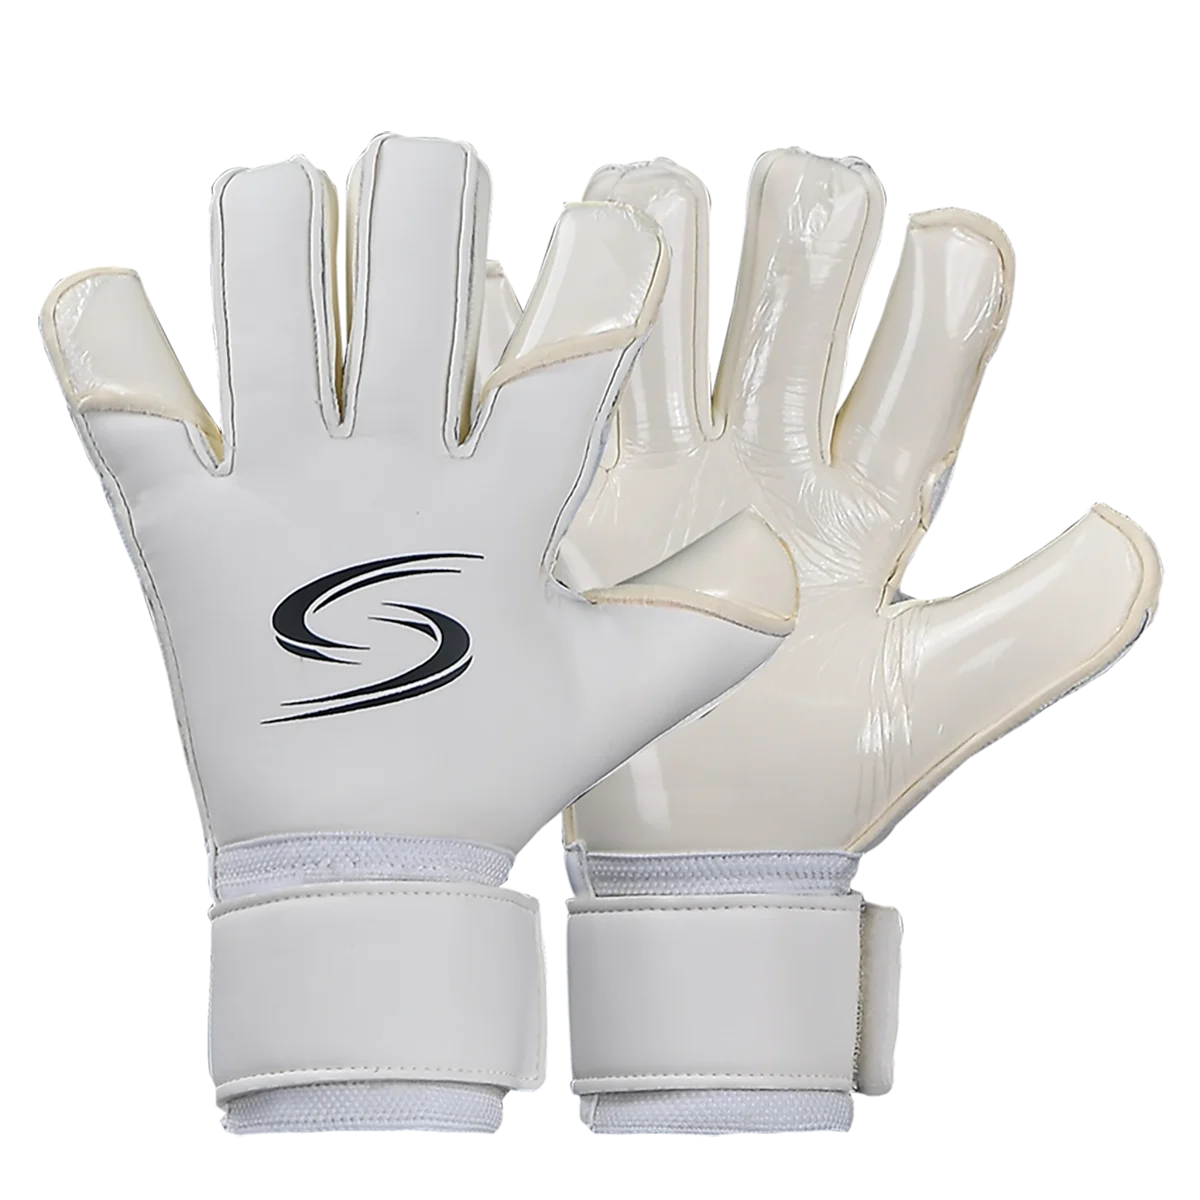 

4 мм немецкие латексные перчатки вратаря белые Нескользящие профессиональные перчатки вратаря для футбола без защиты пальцев VG3 Guantes De Portero